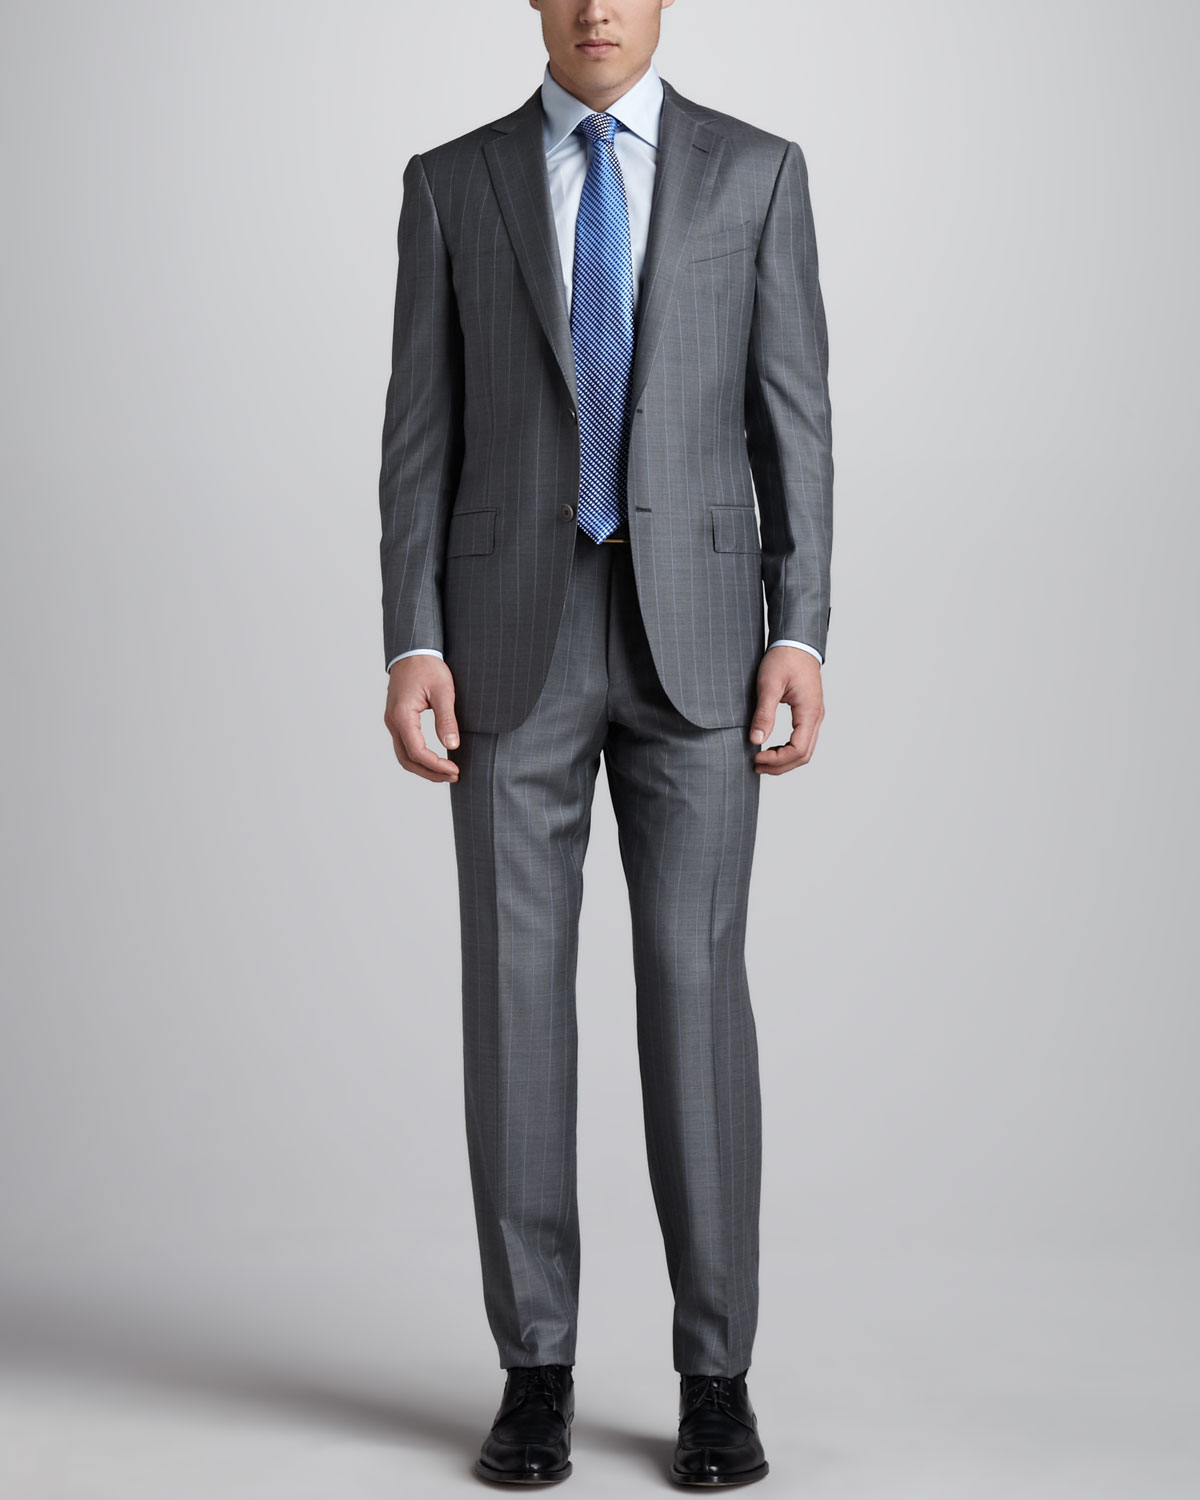 Lyst - Ermenegildo Zegna Pinstripe Suit Grayblue in Gray for Men